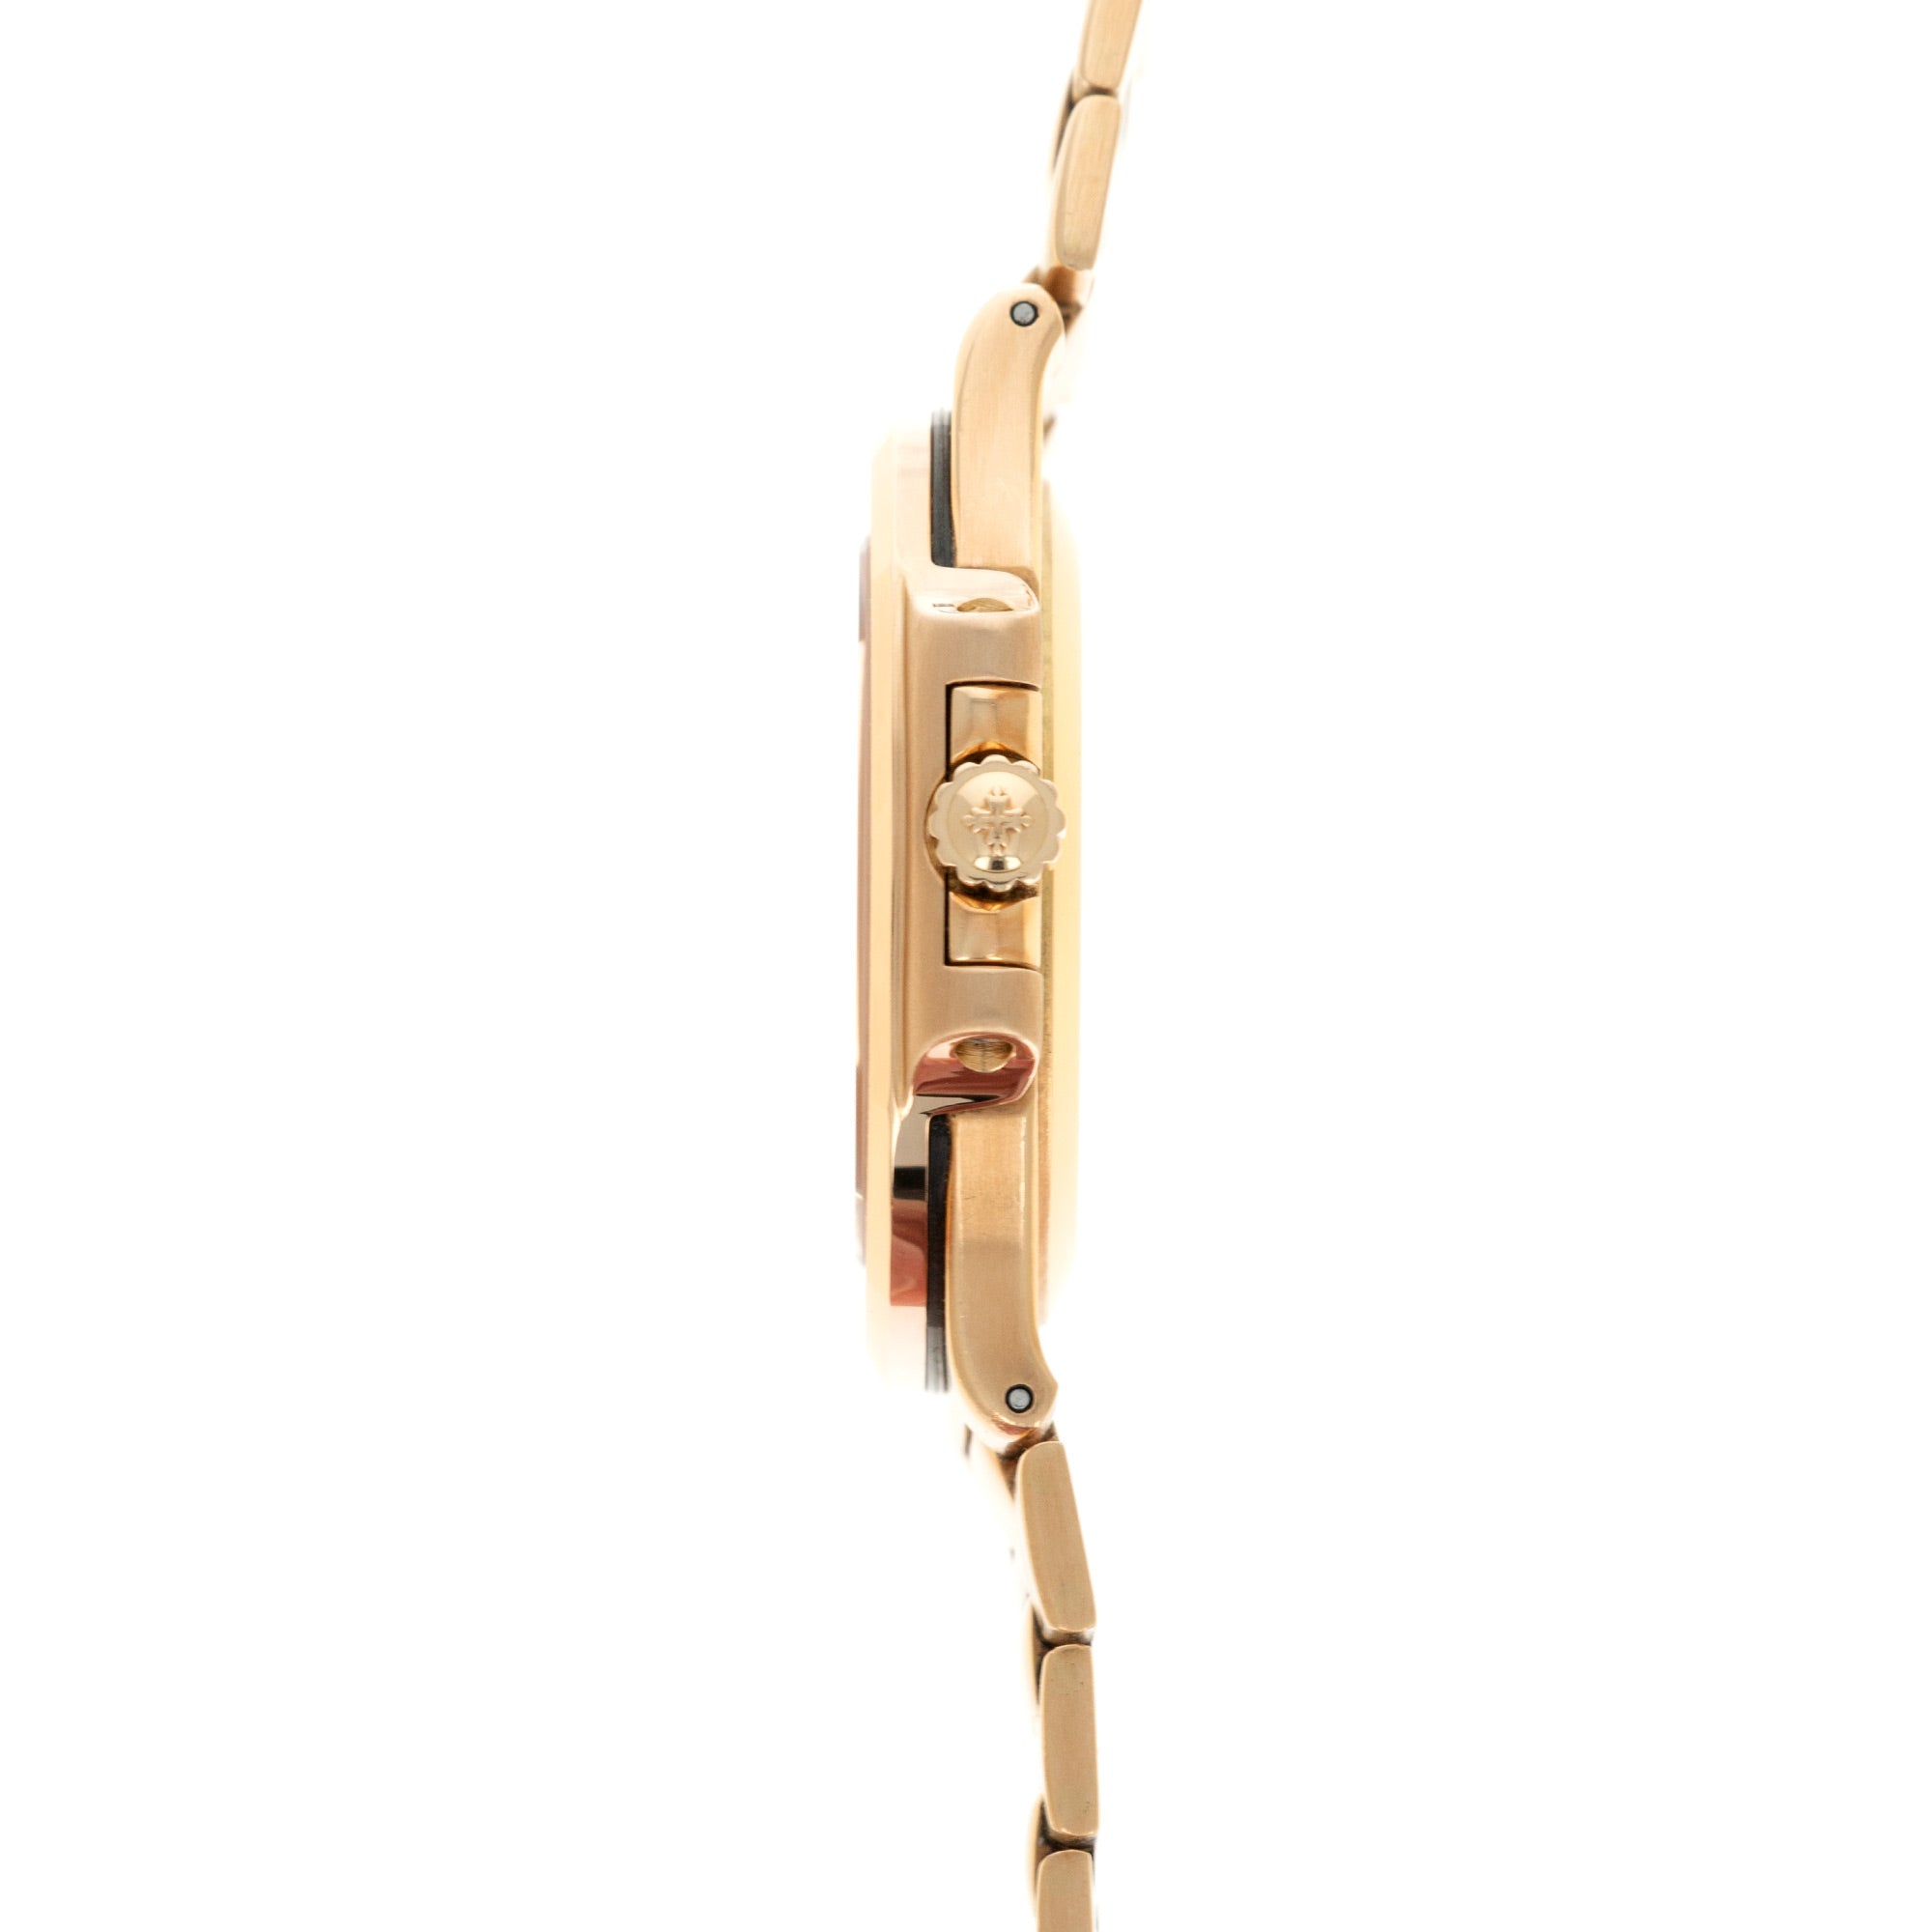 Patek Philippe - Patek Philippe Yellow Gold Nautilus Ref. 3800J - The Keystone Watches